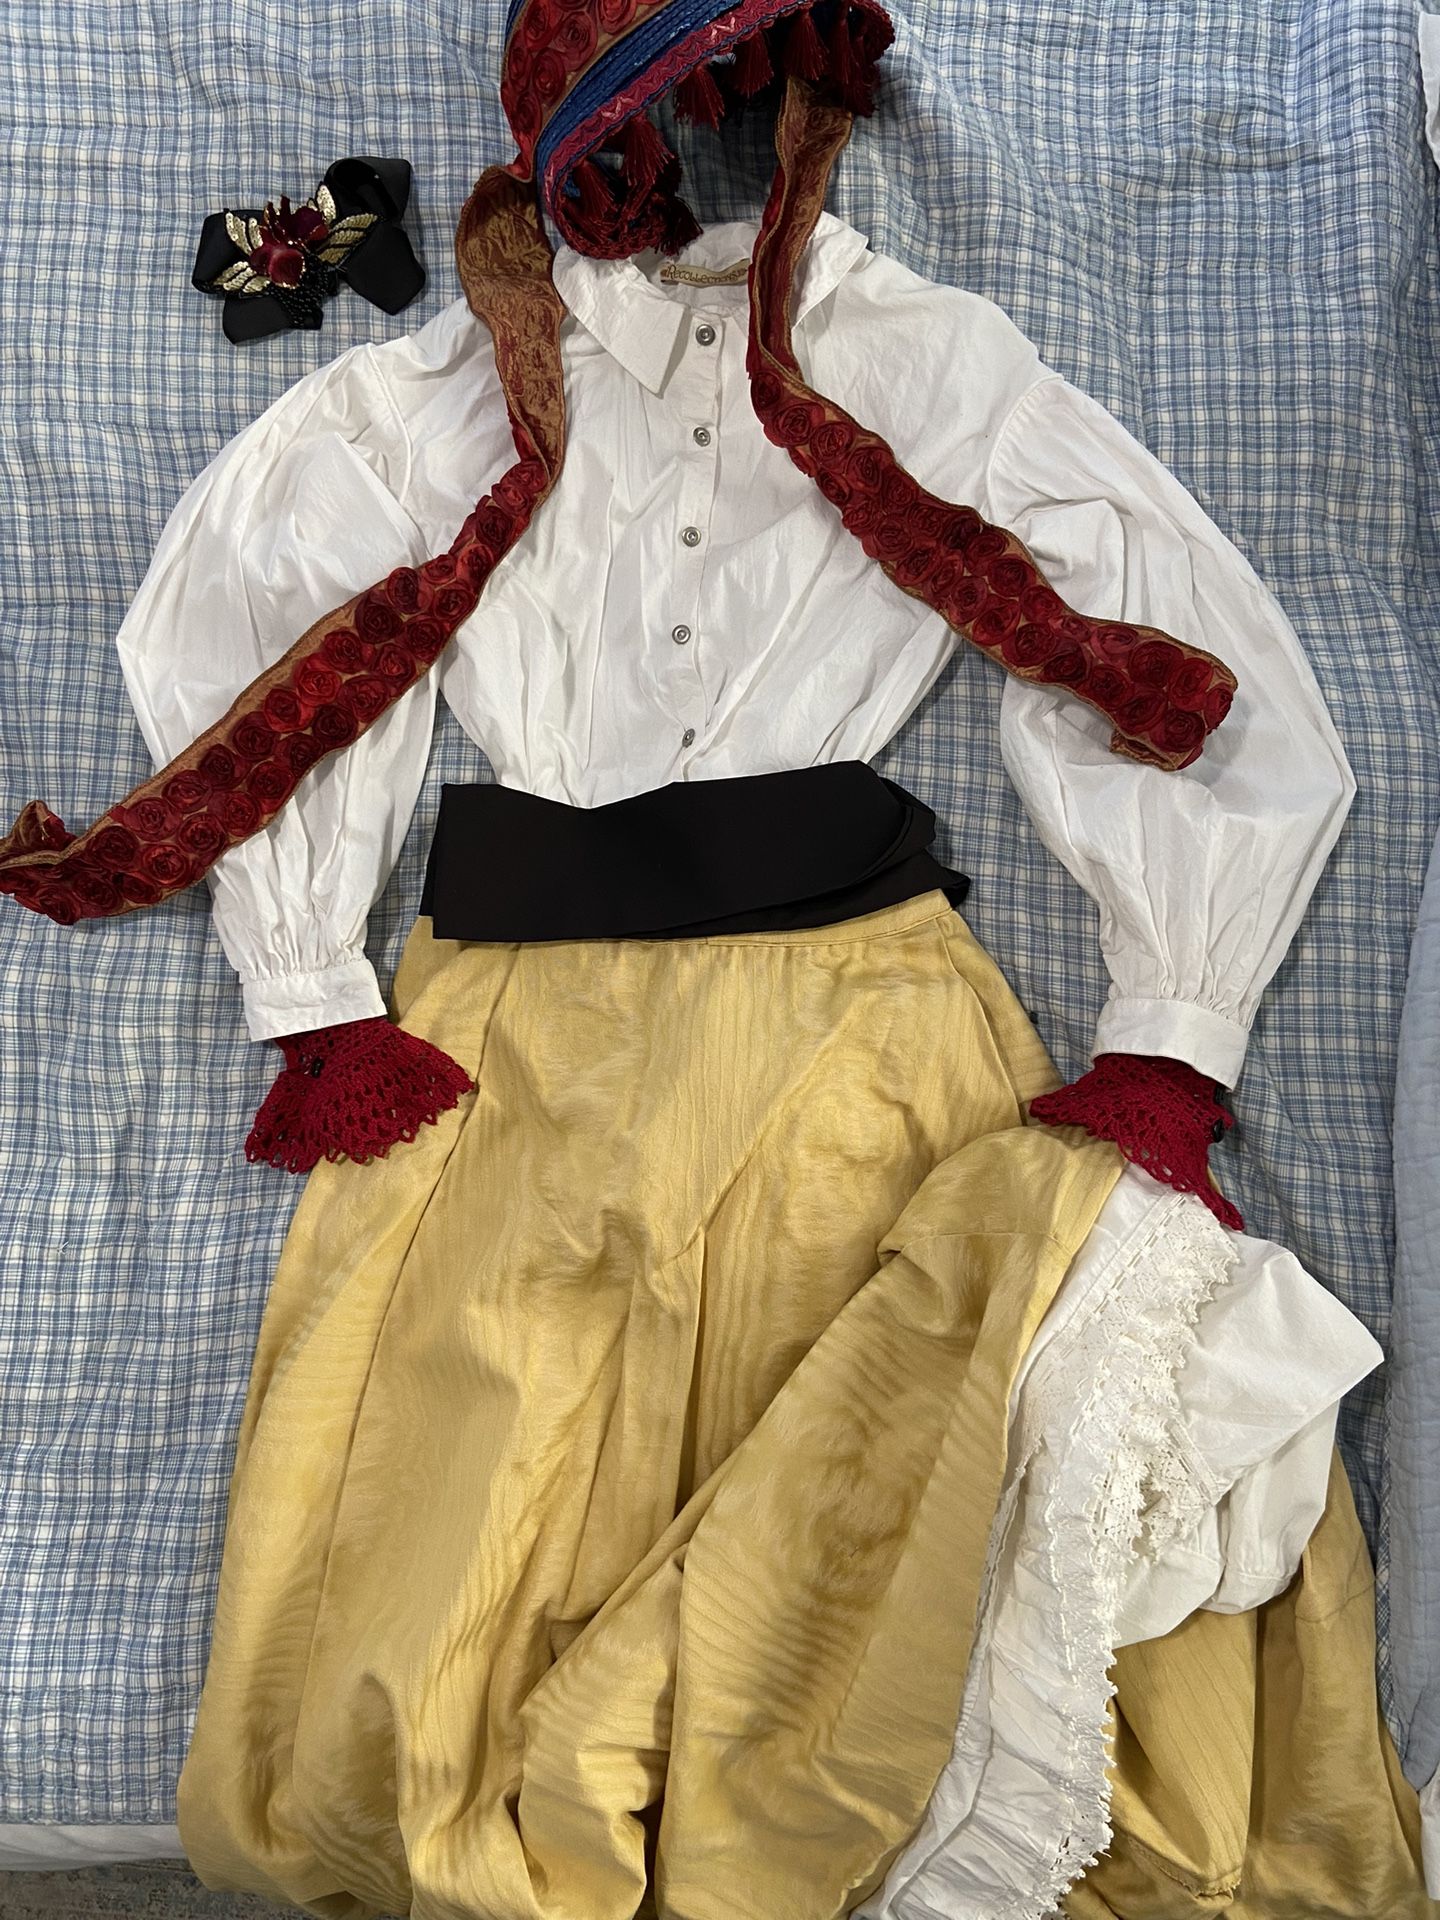 Dickens fair Costume